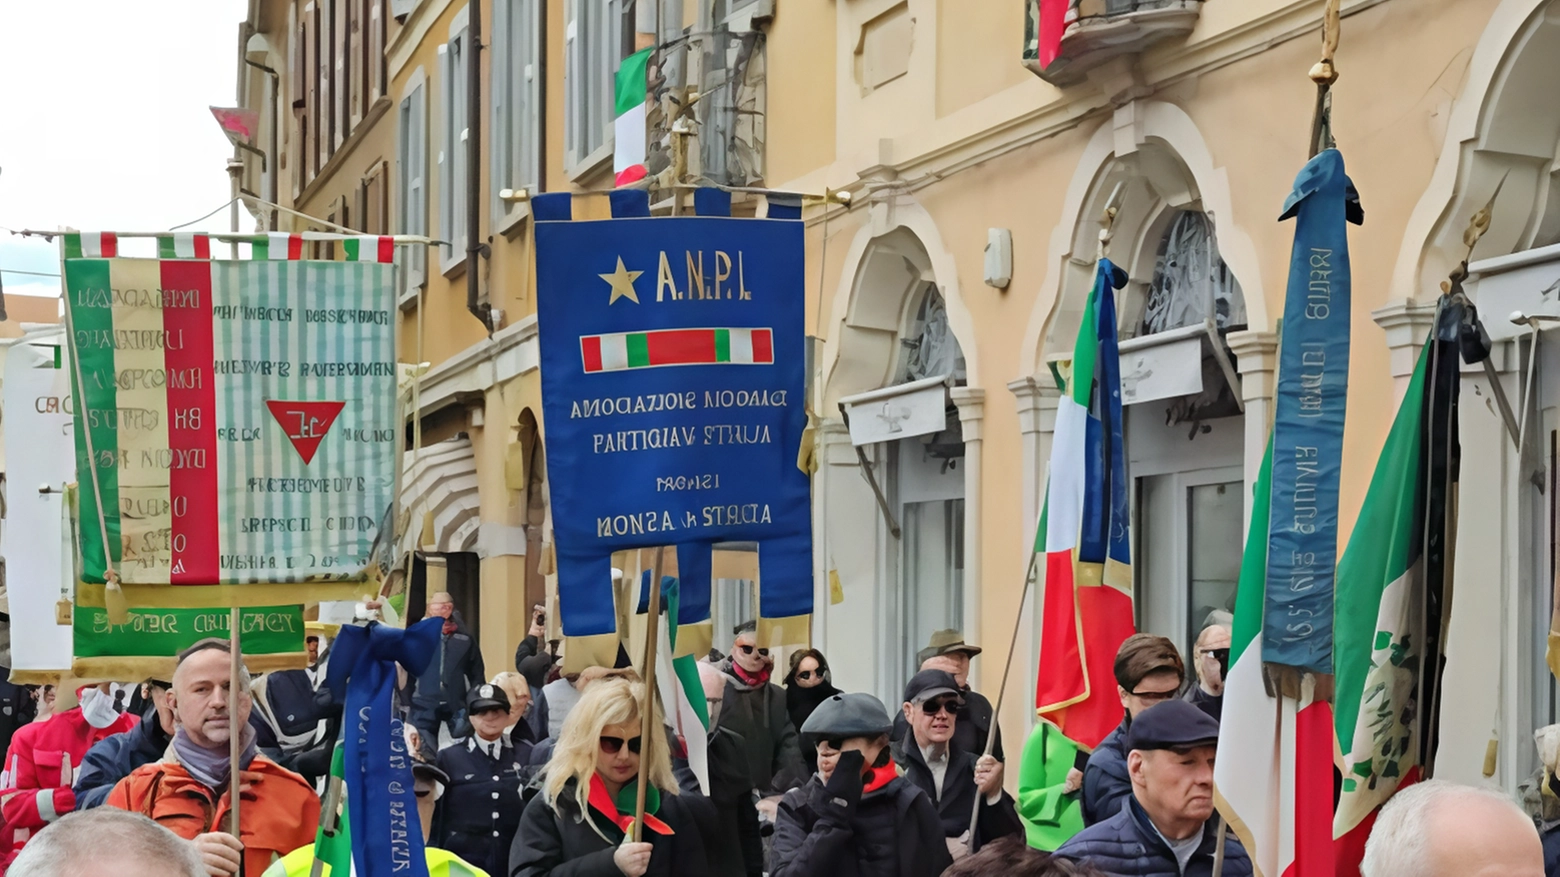 Il territorio brianzolo di Monza celebra la Resistenza con ricordi di eroi caduti e donne coraggiose. La Festa della Liberazione onora la memoria con cerimonie e discorsi istituzionali.